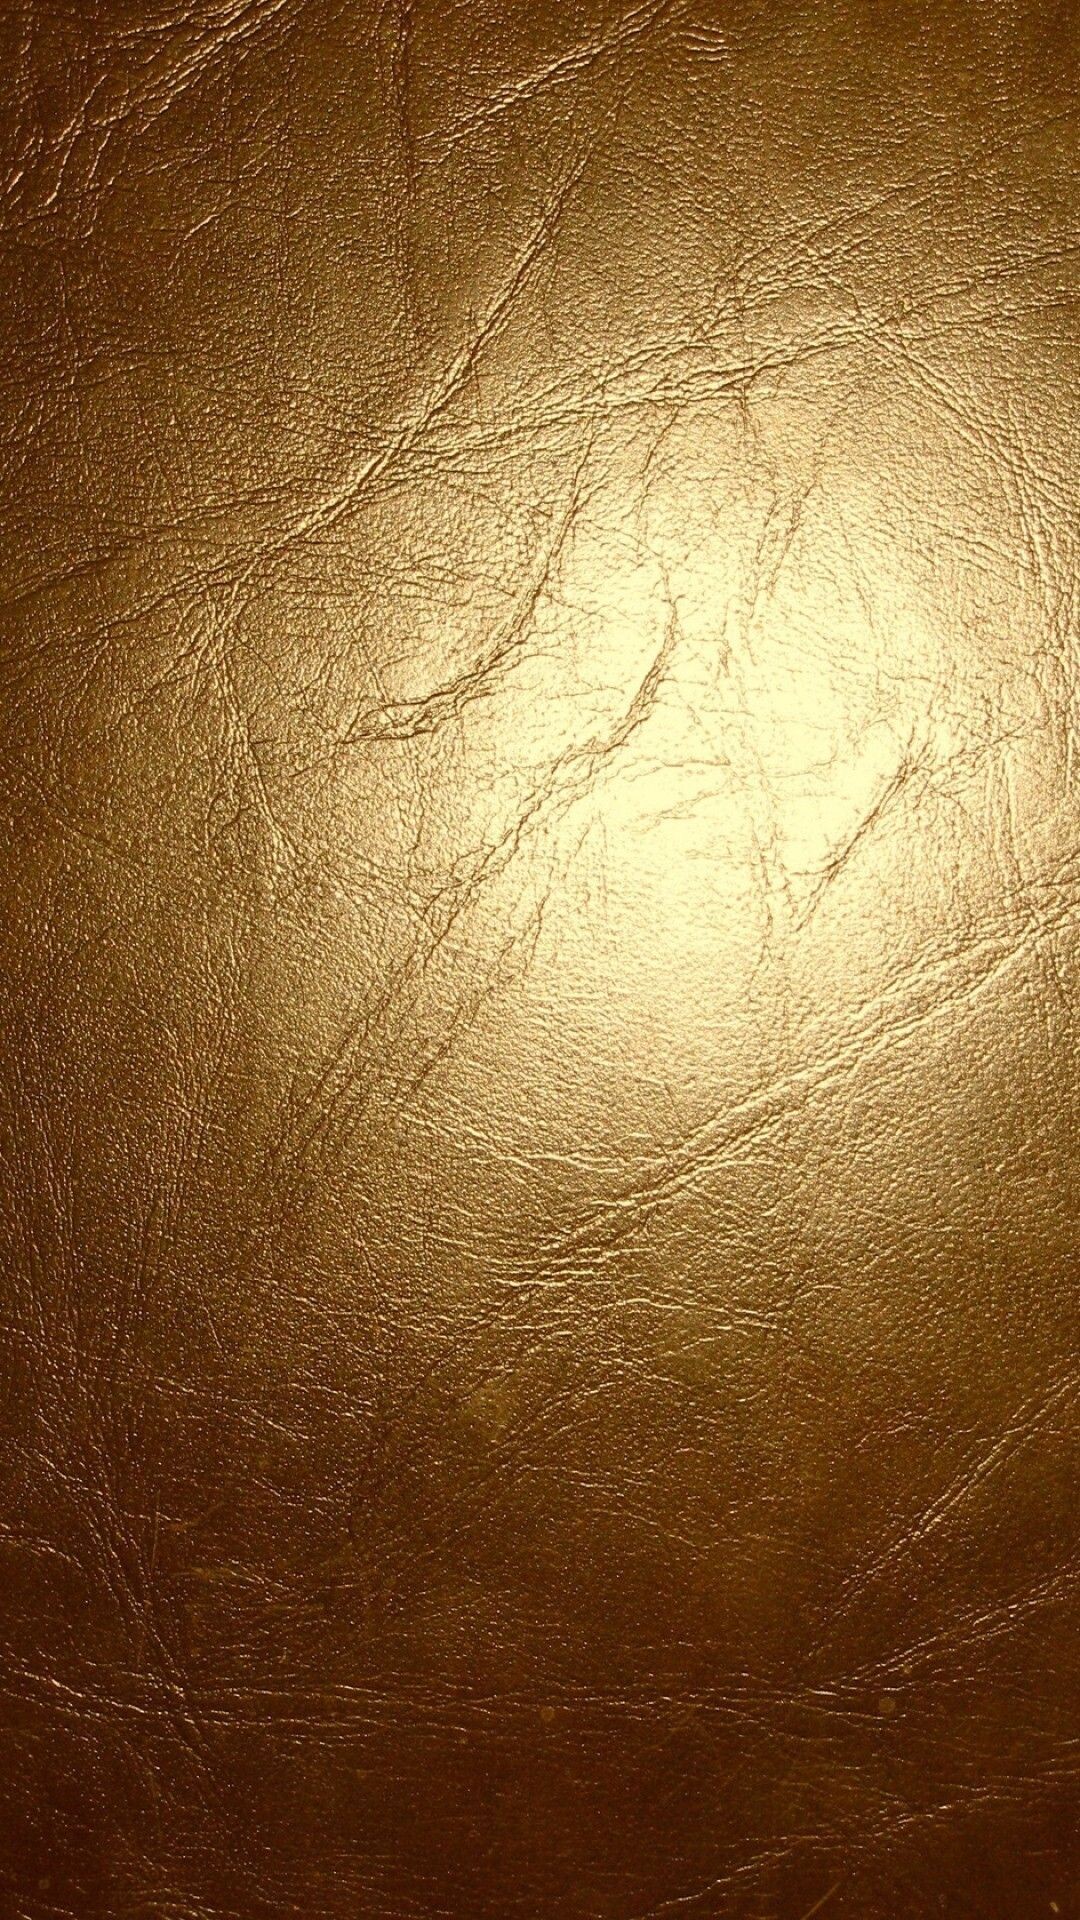 Gold Foil: Ornamental leather work, The 22-karat yellow metal. 1080x1920 Full HD Wallpaper.